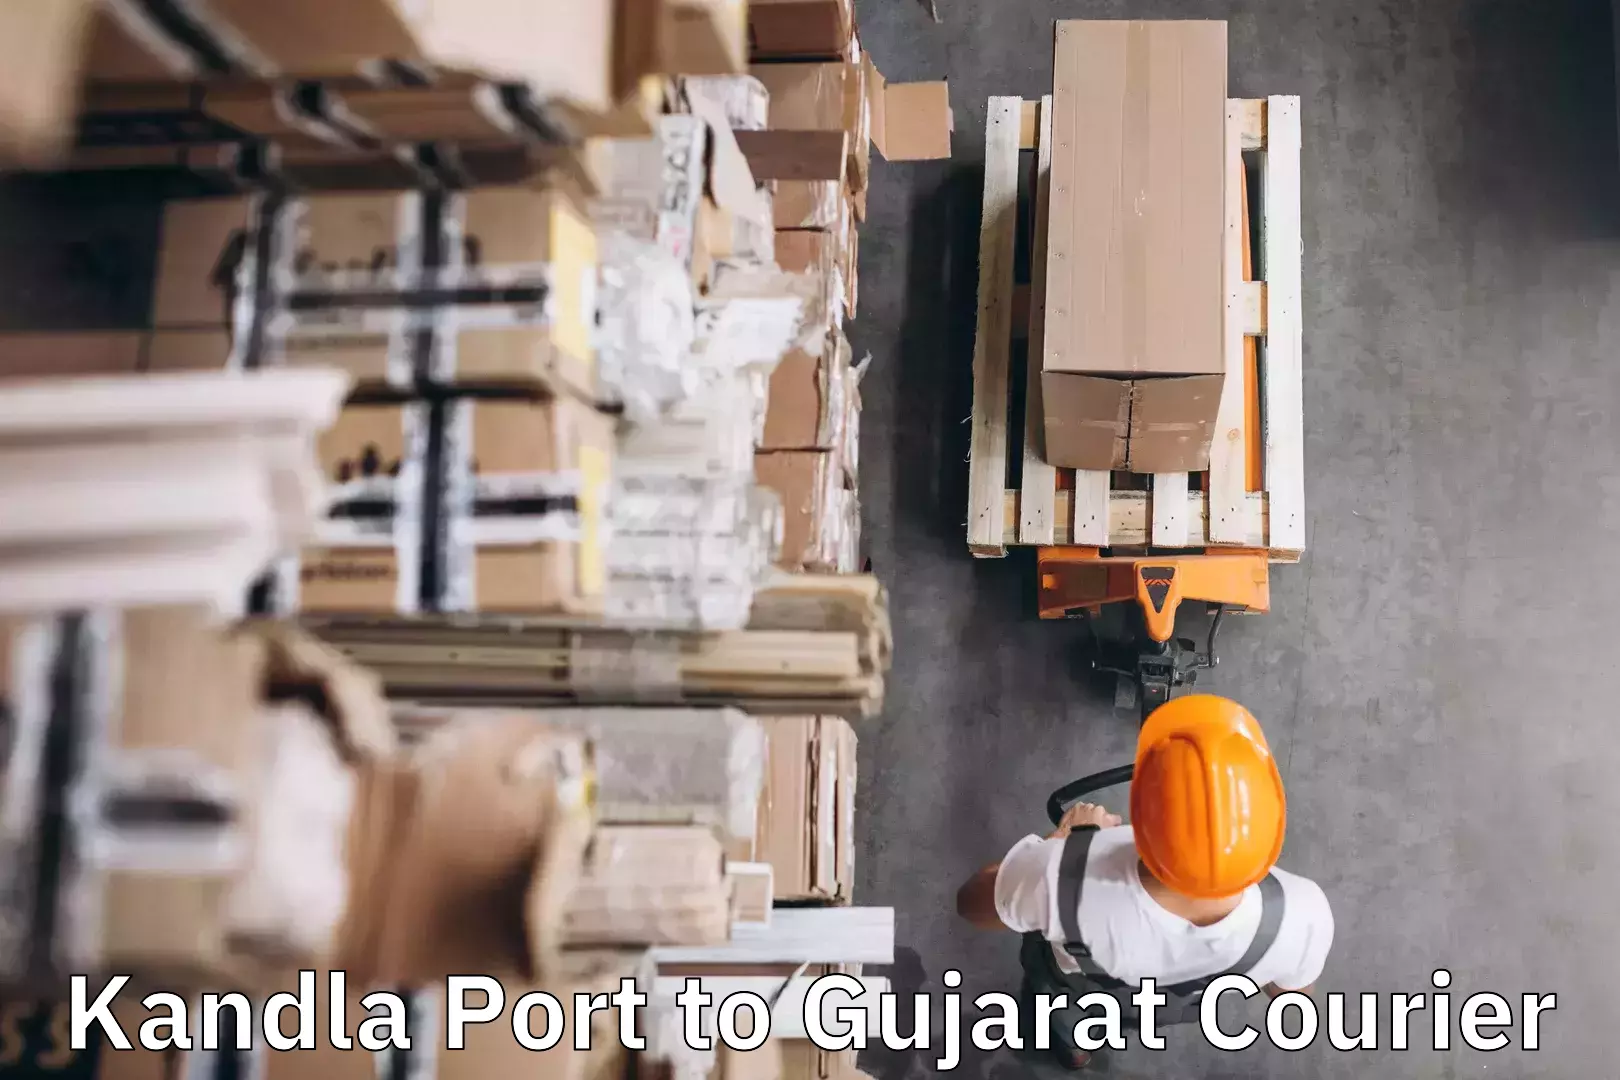 Luggage delivery providers Kandla Port to Dhandhuka